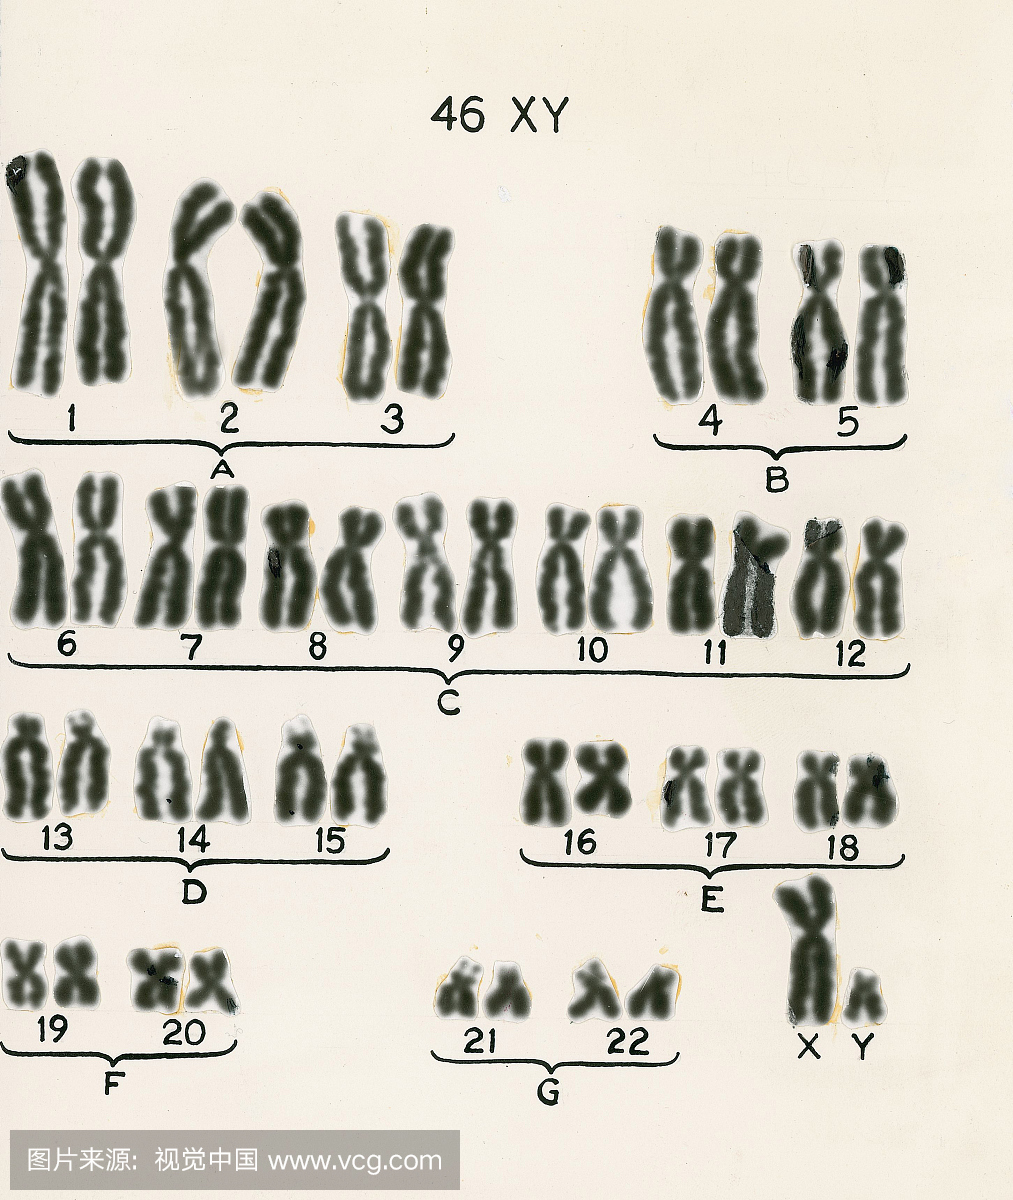 人类染色体正常雄性核型显示全部46条染色体